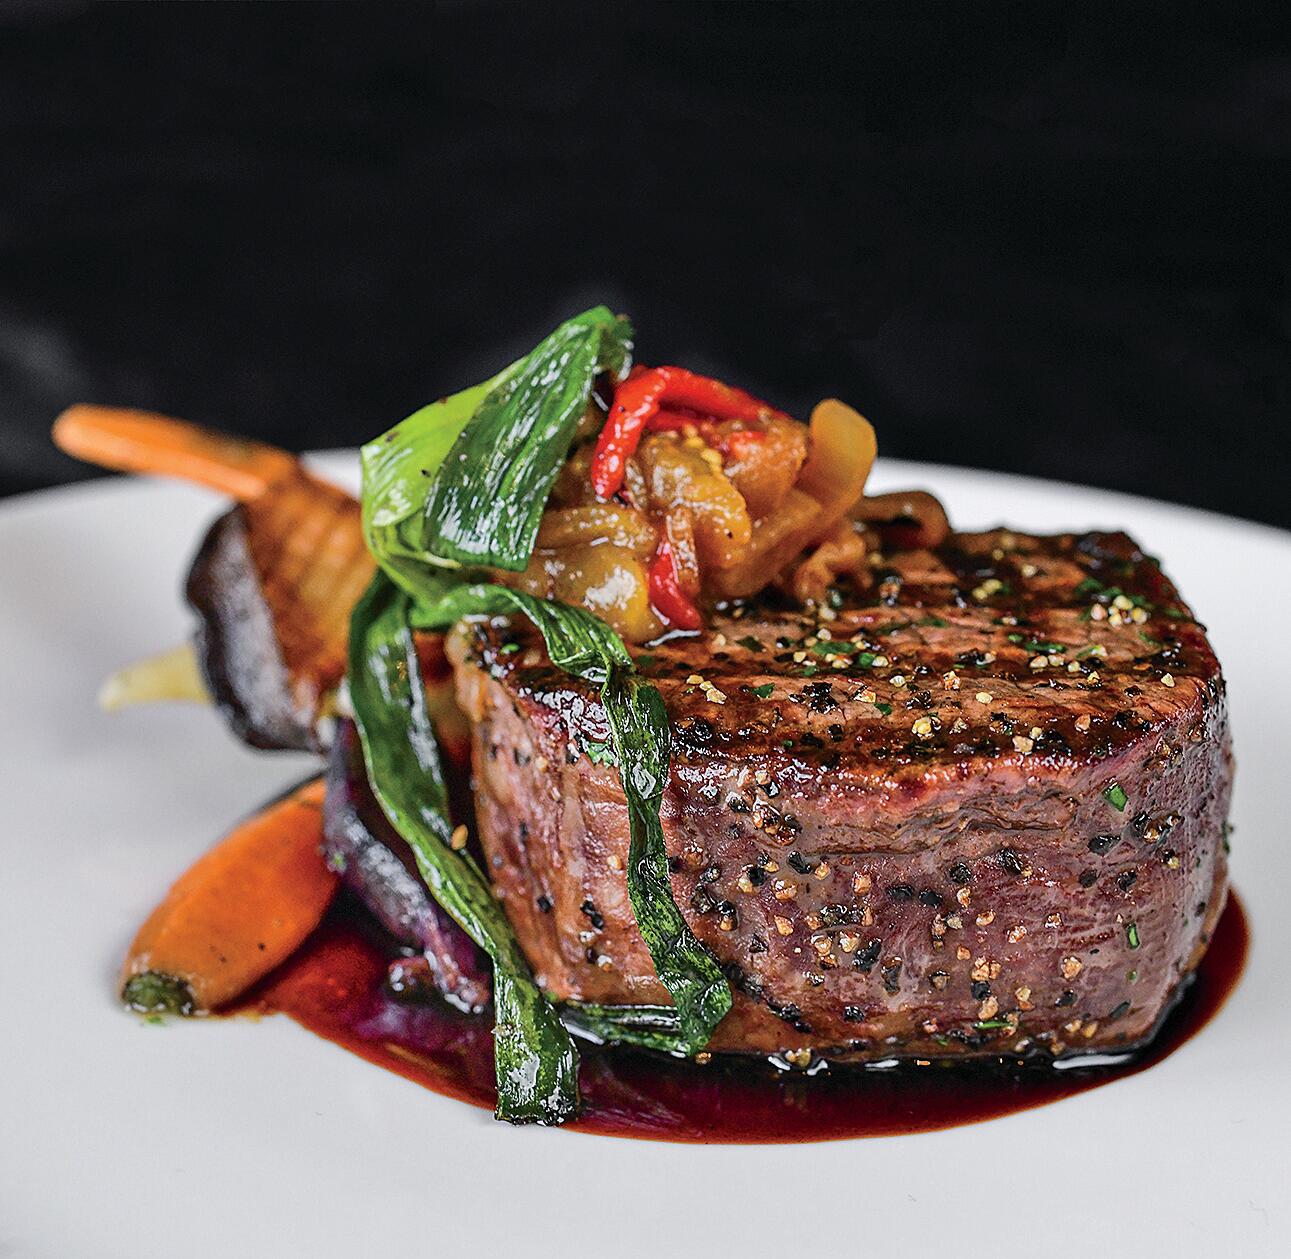 Indulge! Dine at Houston’s Best Restaurants